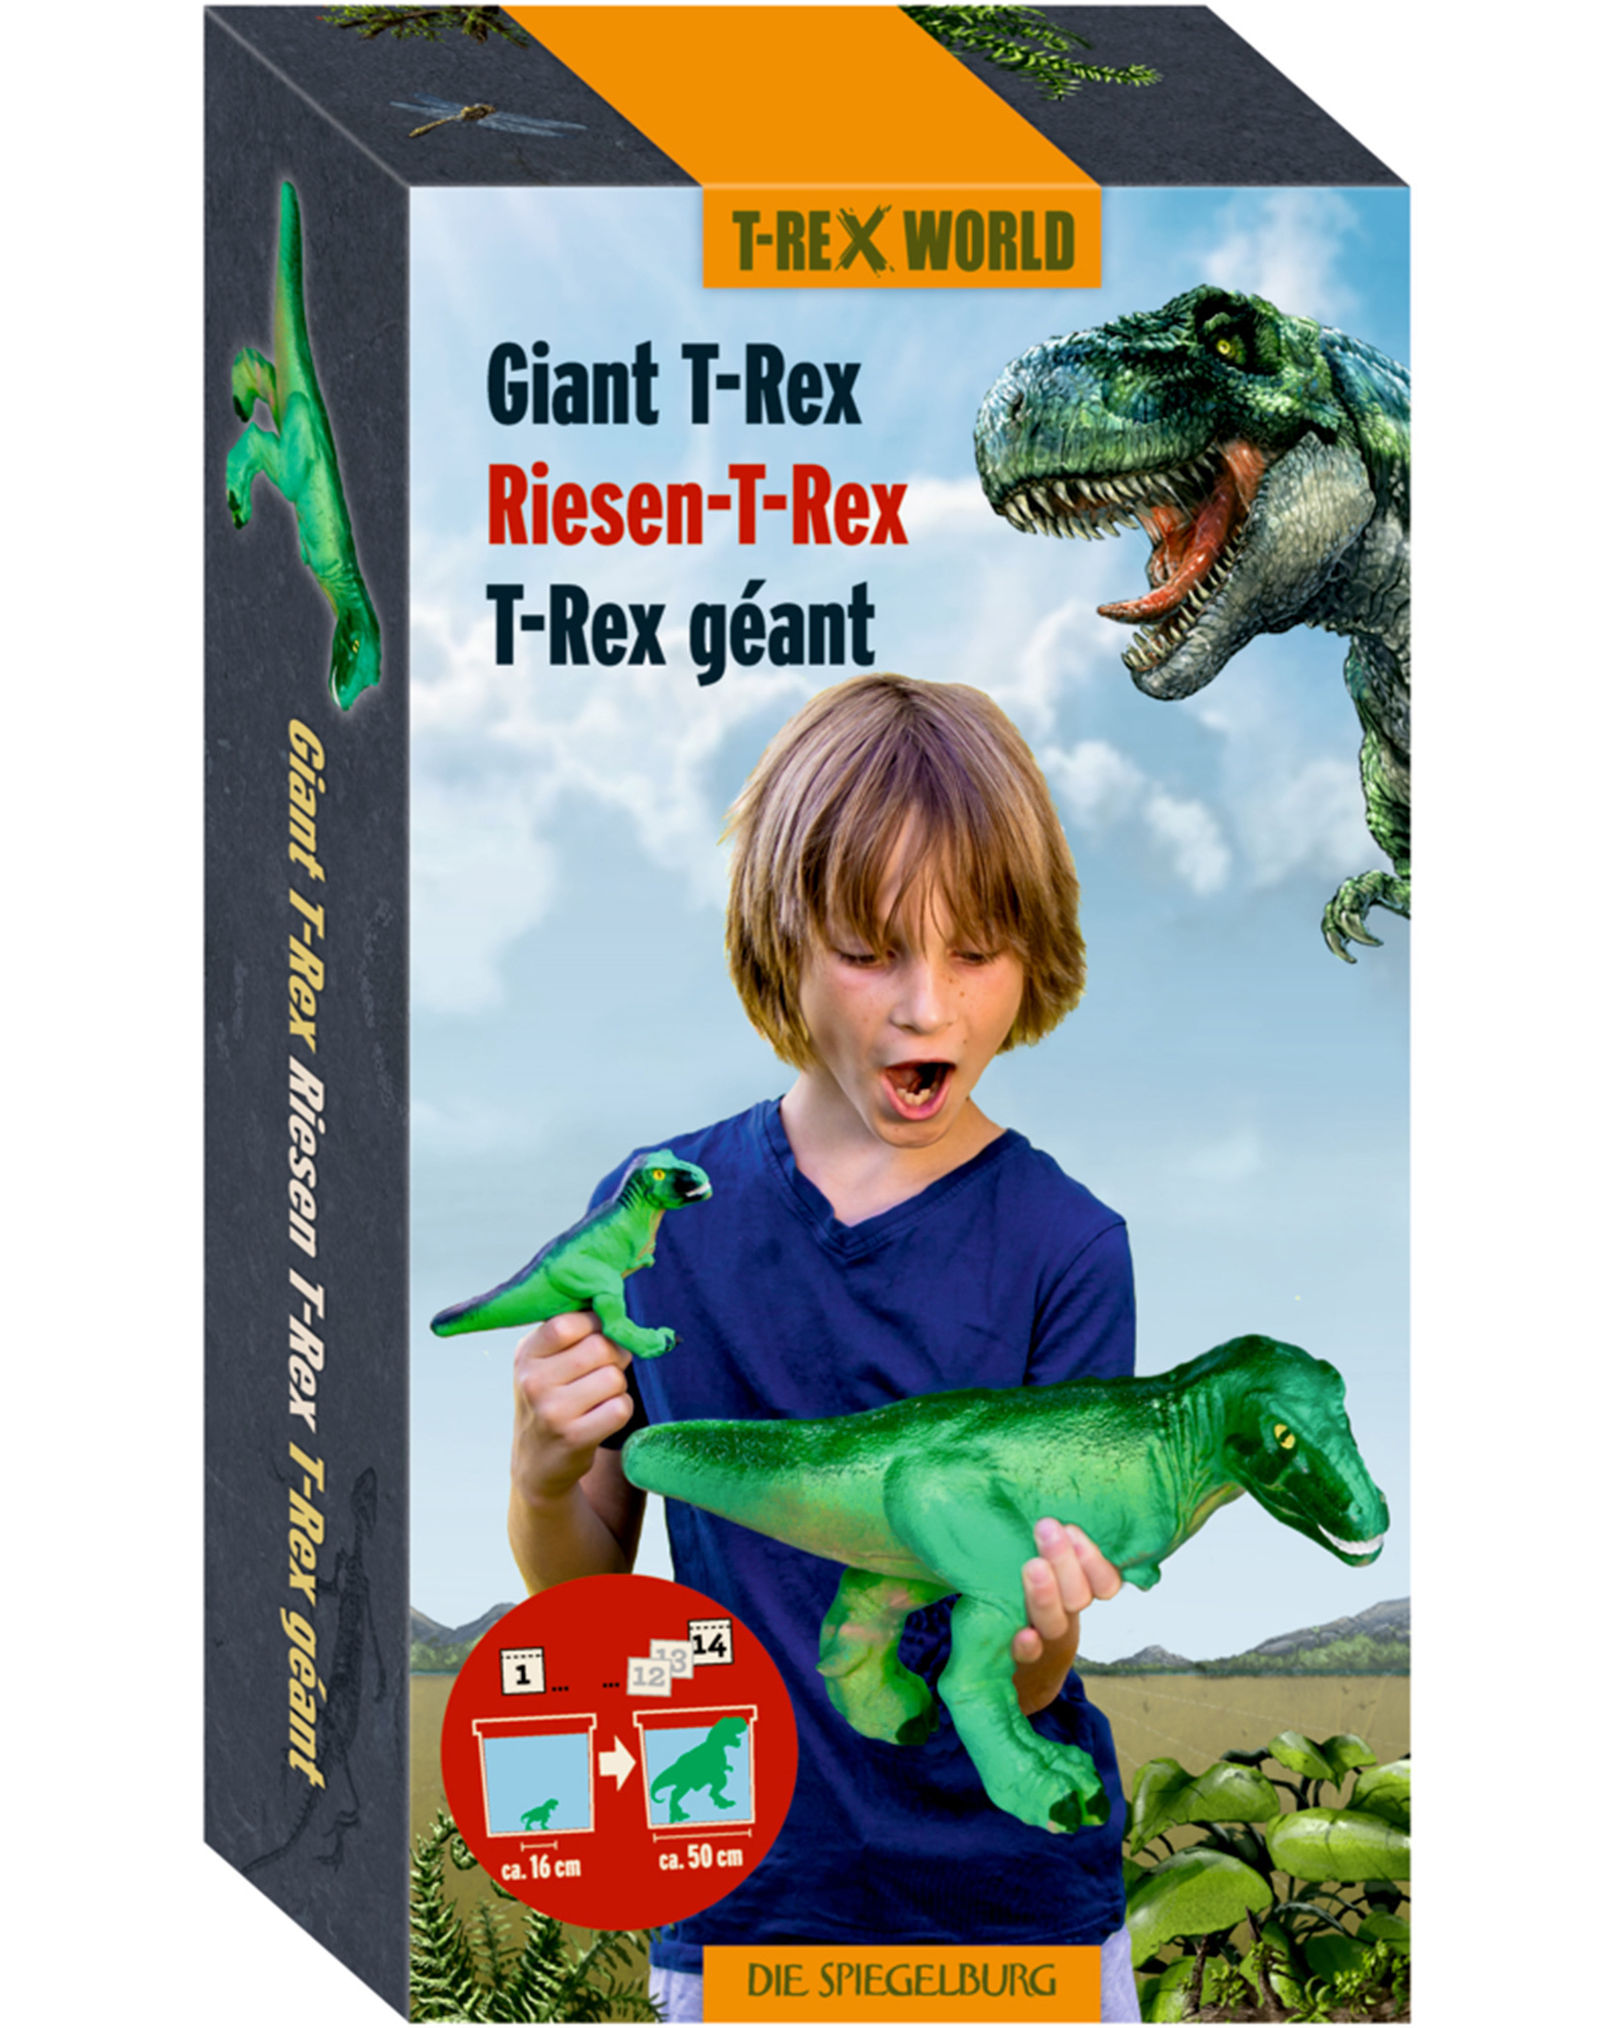 Dinofigur T-REX WORLD - T-REX kaufen | tausendkind.de